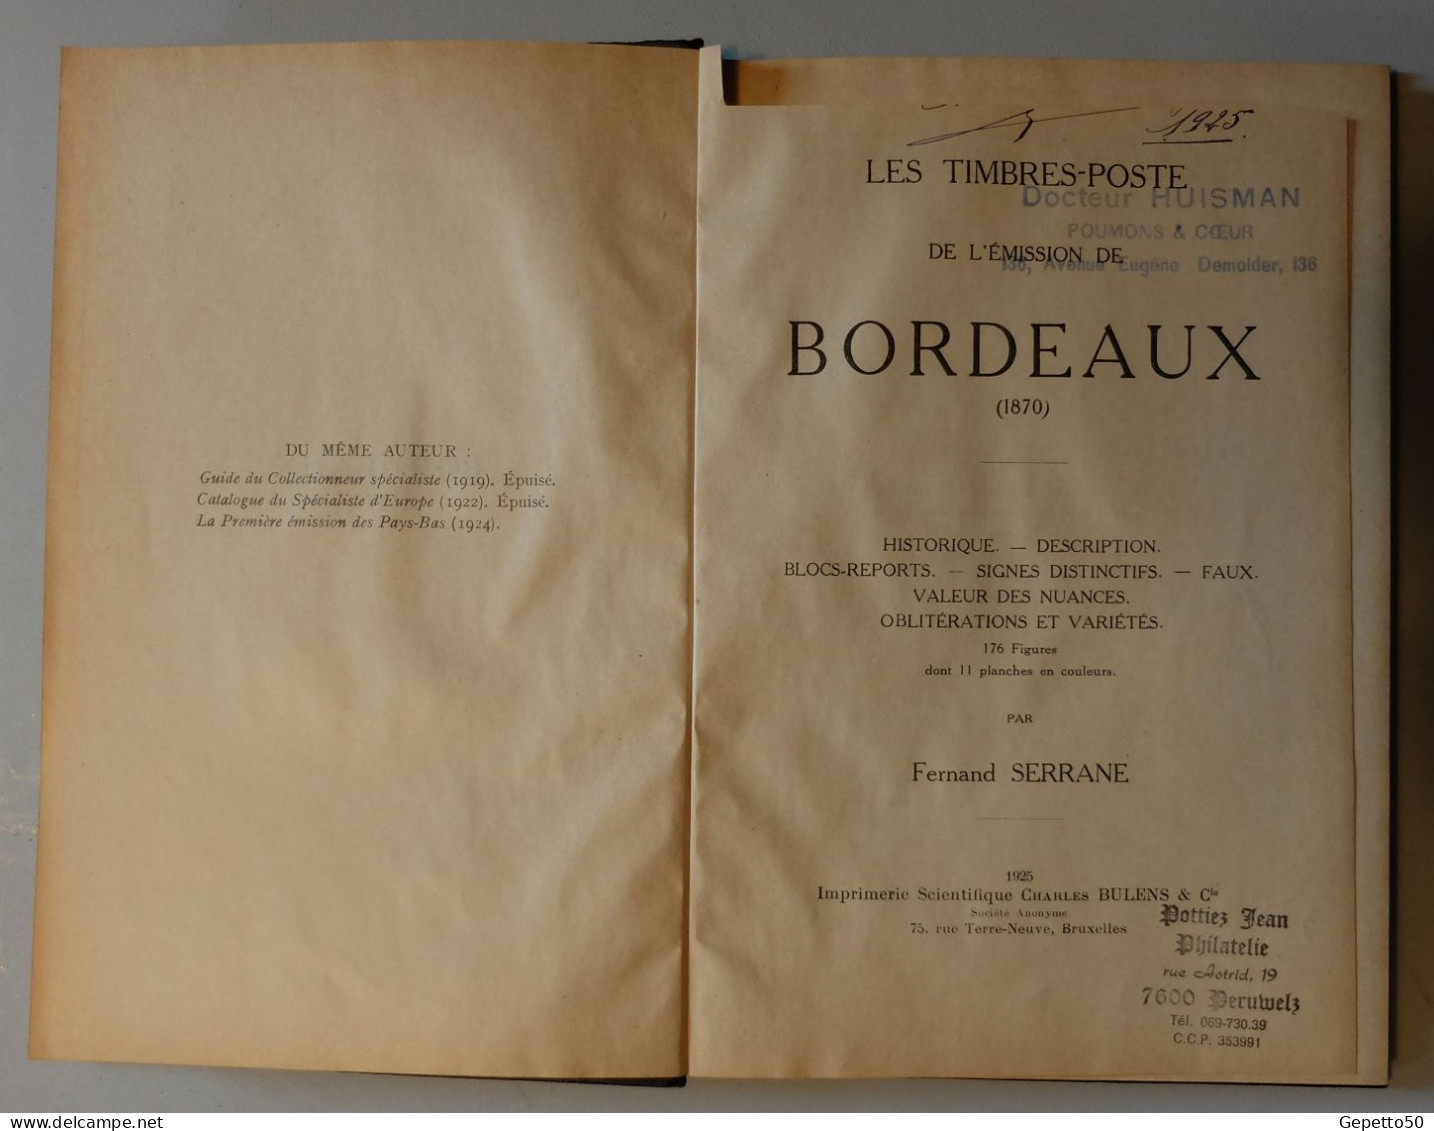 Les Timbres-Poste De L'émission De Bordeaux 1870 Par Fernand Serrane  2è édition Cartonnée. - Philately And Postal History